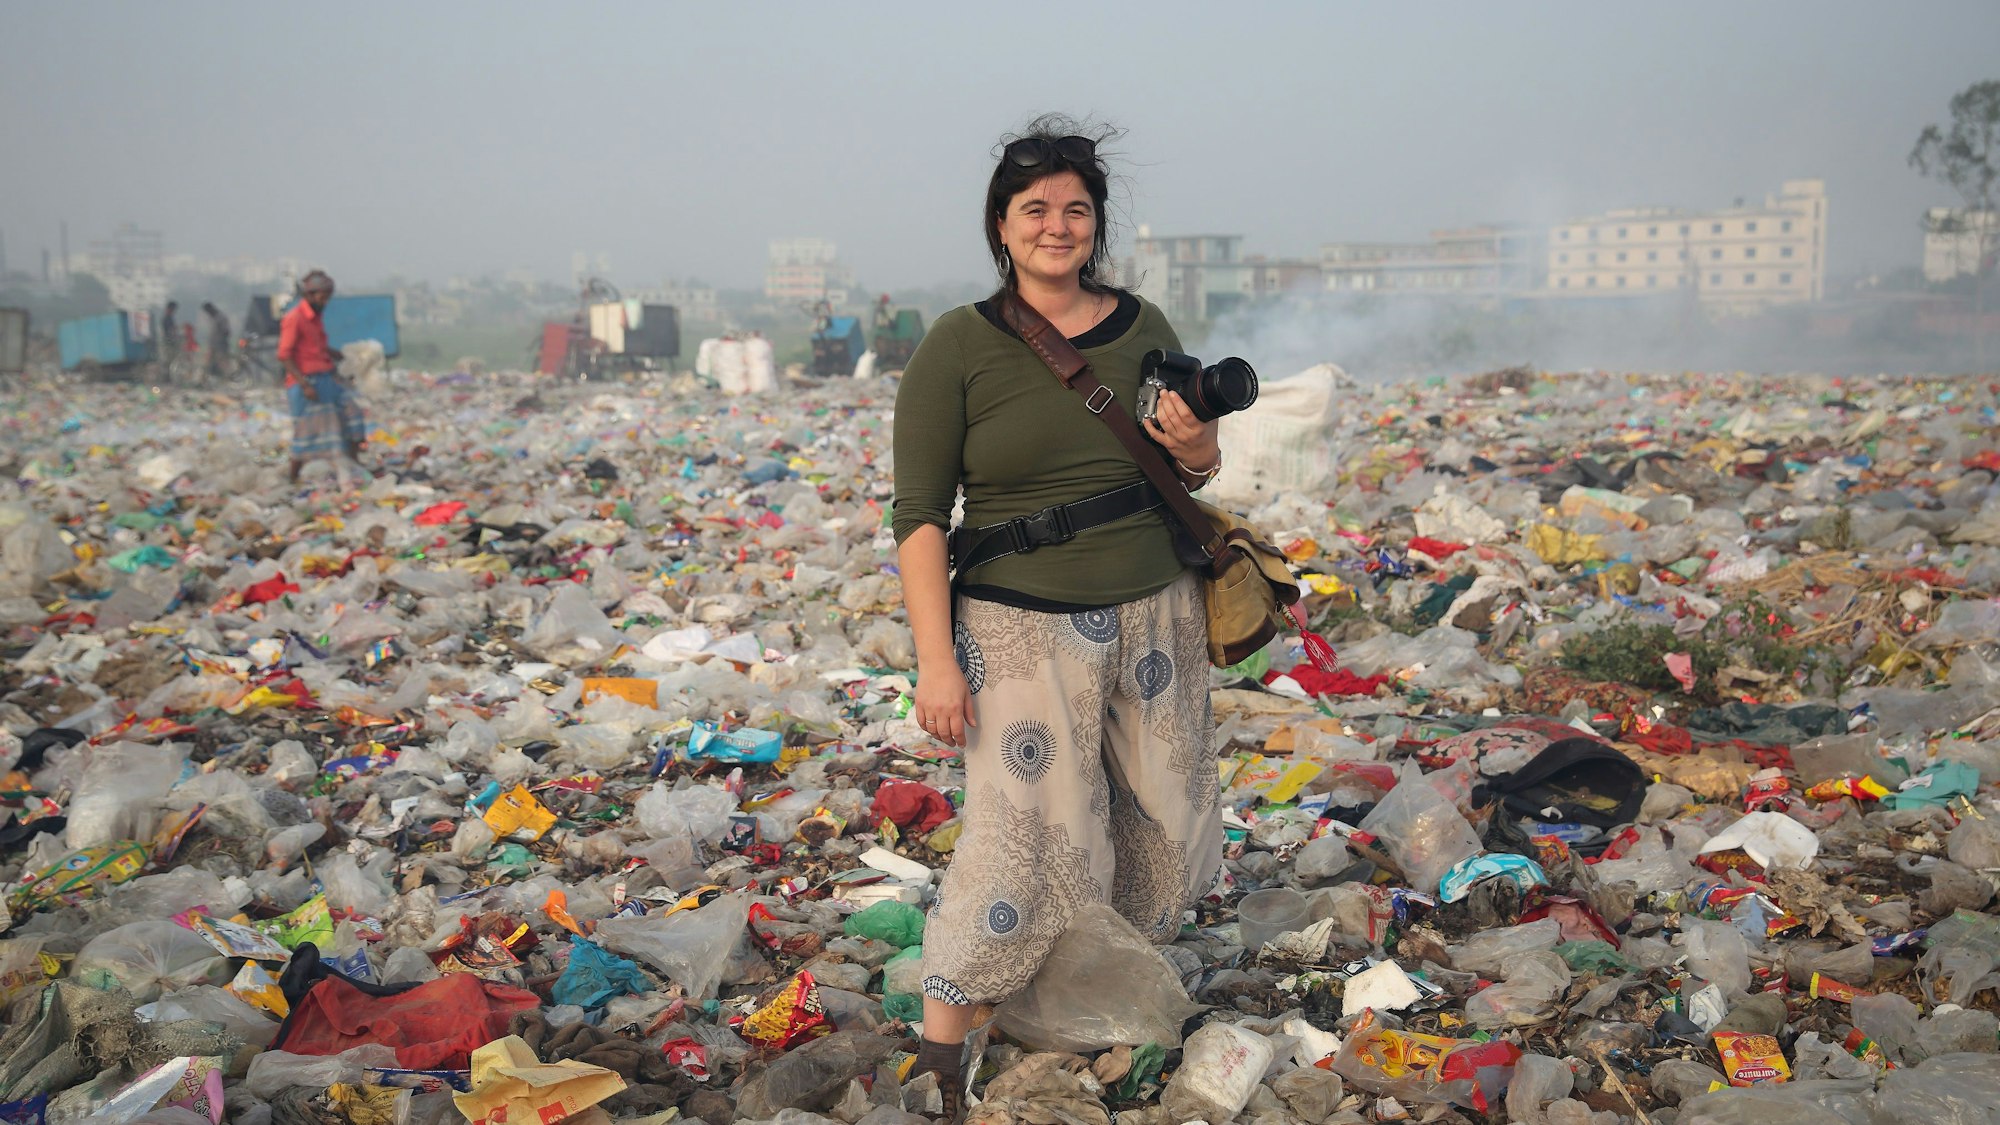 Alena Horst steht mit Kamera in der Hand in einer Müll-Landschaft.